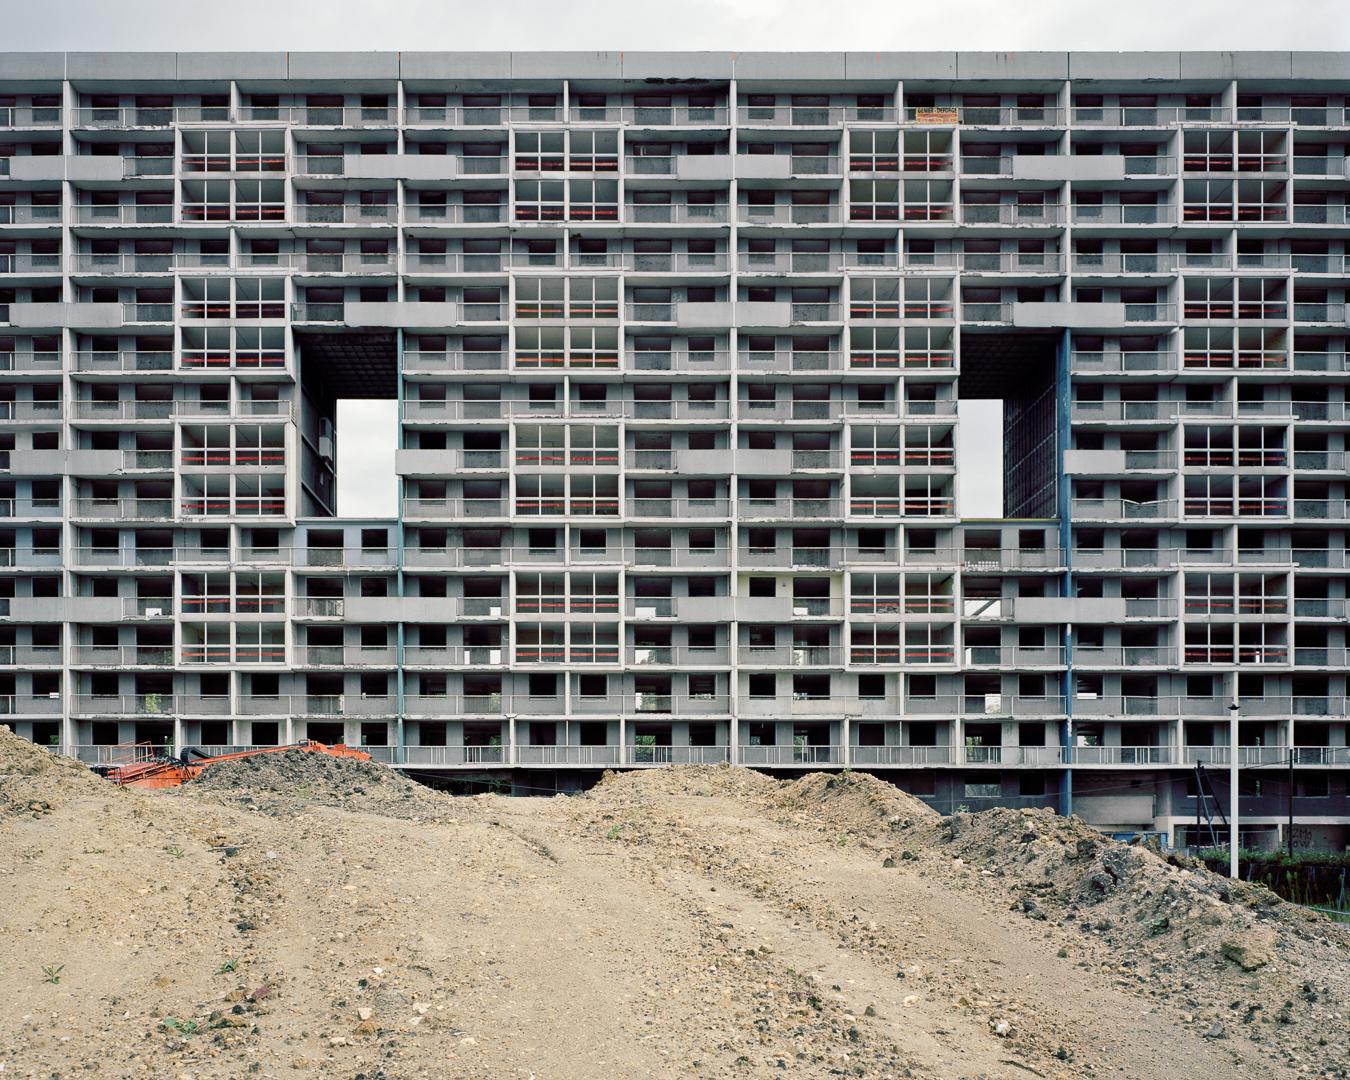 General 1350x1080 architecture building block of flats Brutalism balcony construction site concrete dirt